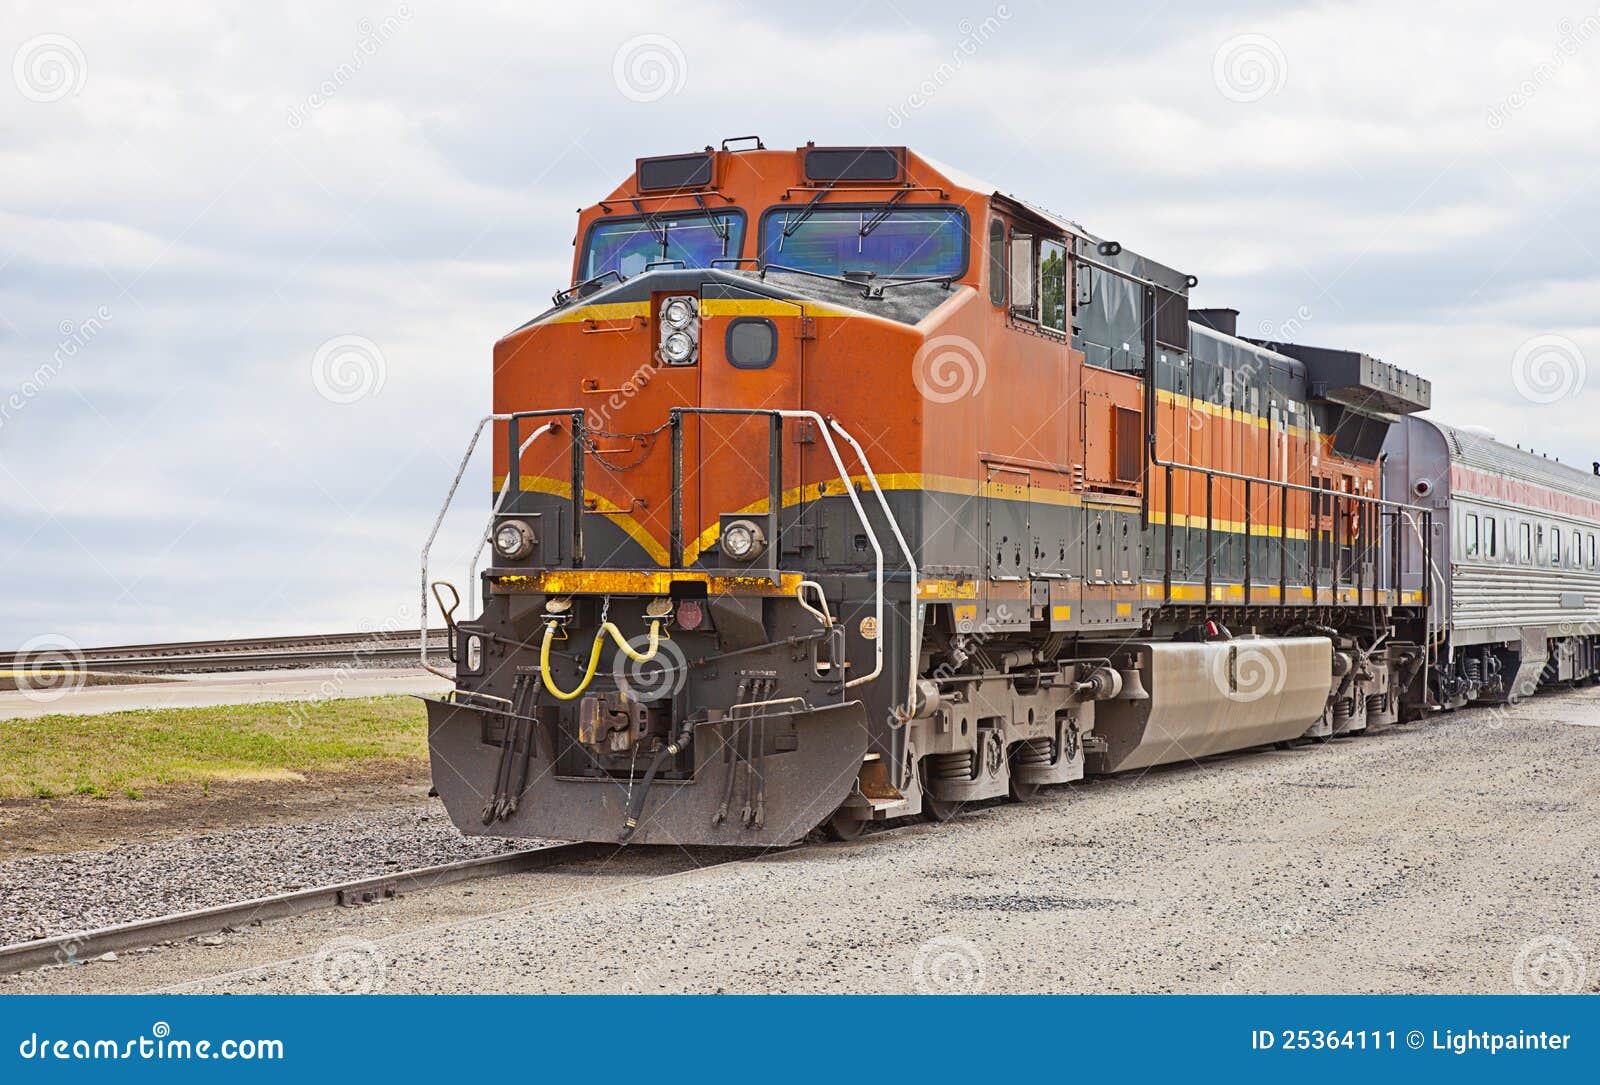  Tren  de carga moderno imagen de archivo Imagen de tren  